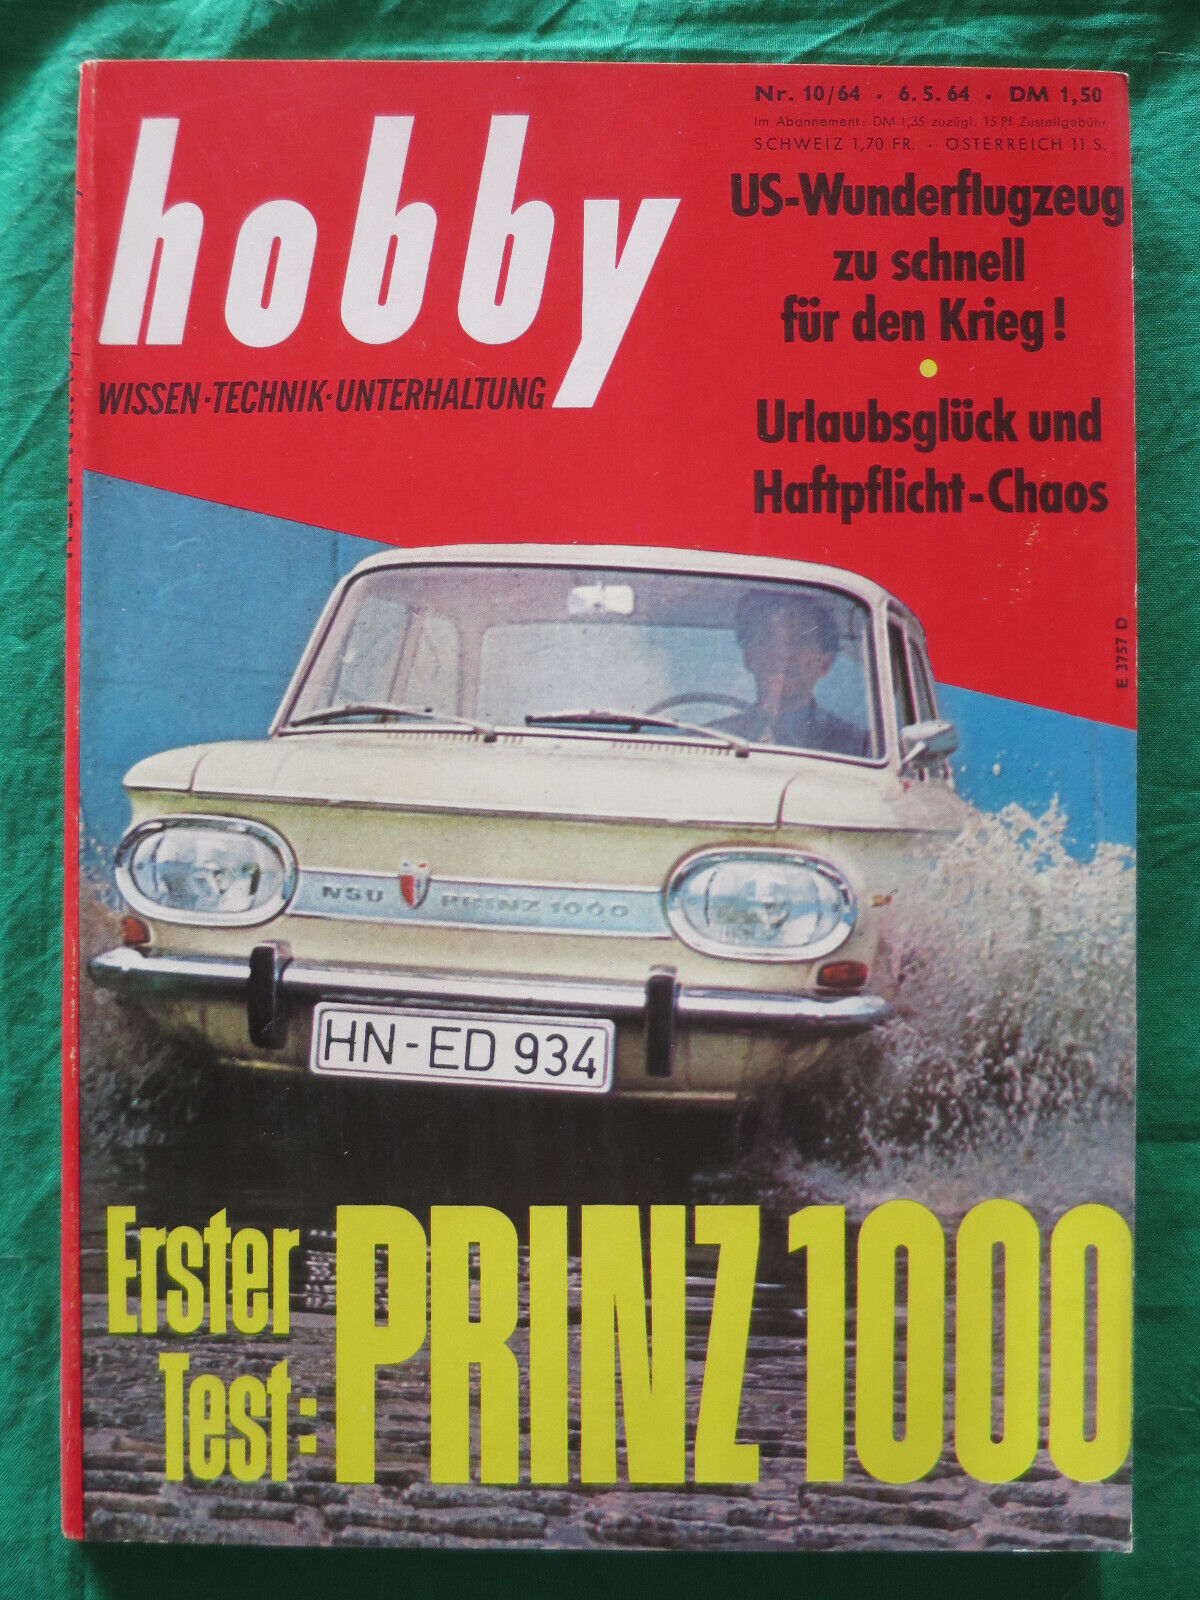 Hobby  Das Magazin derTechnik  1964 20 Hefte Sehr schöner Zustand siehe Liste